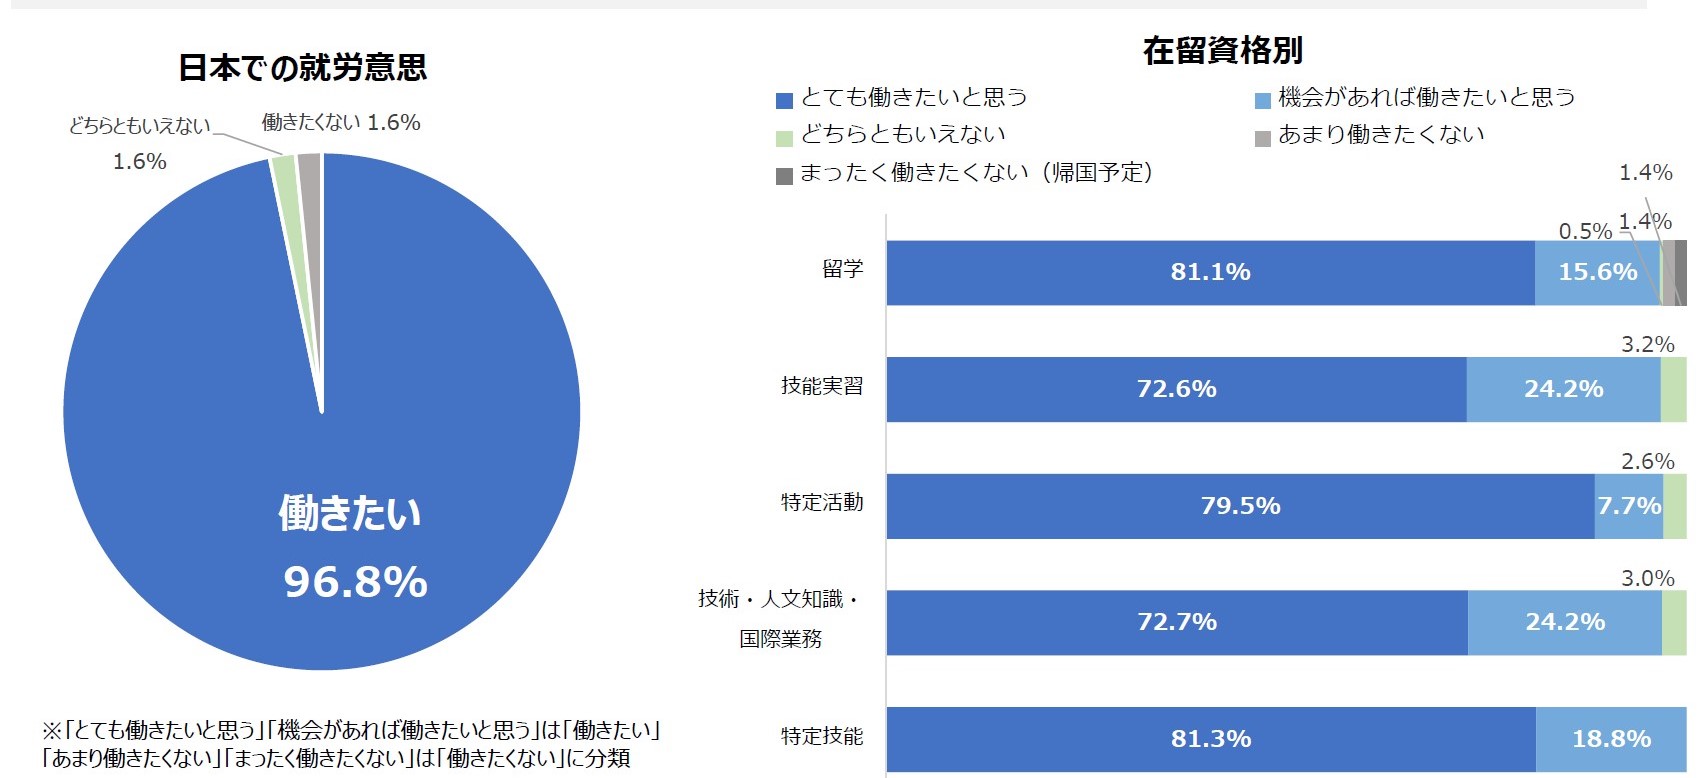 日本での就労意志についての調査結果